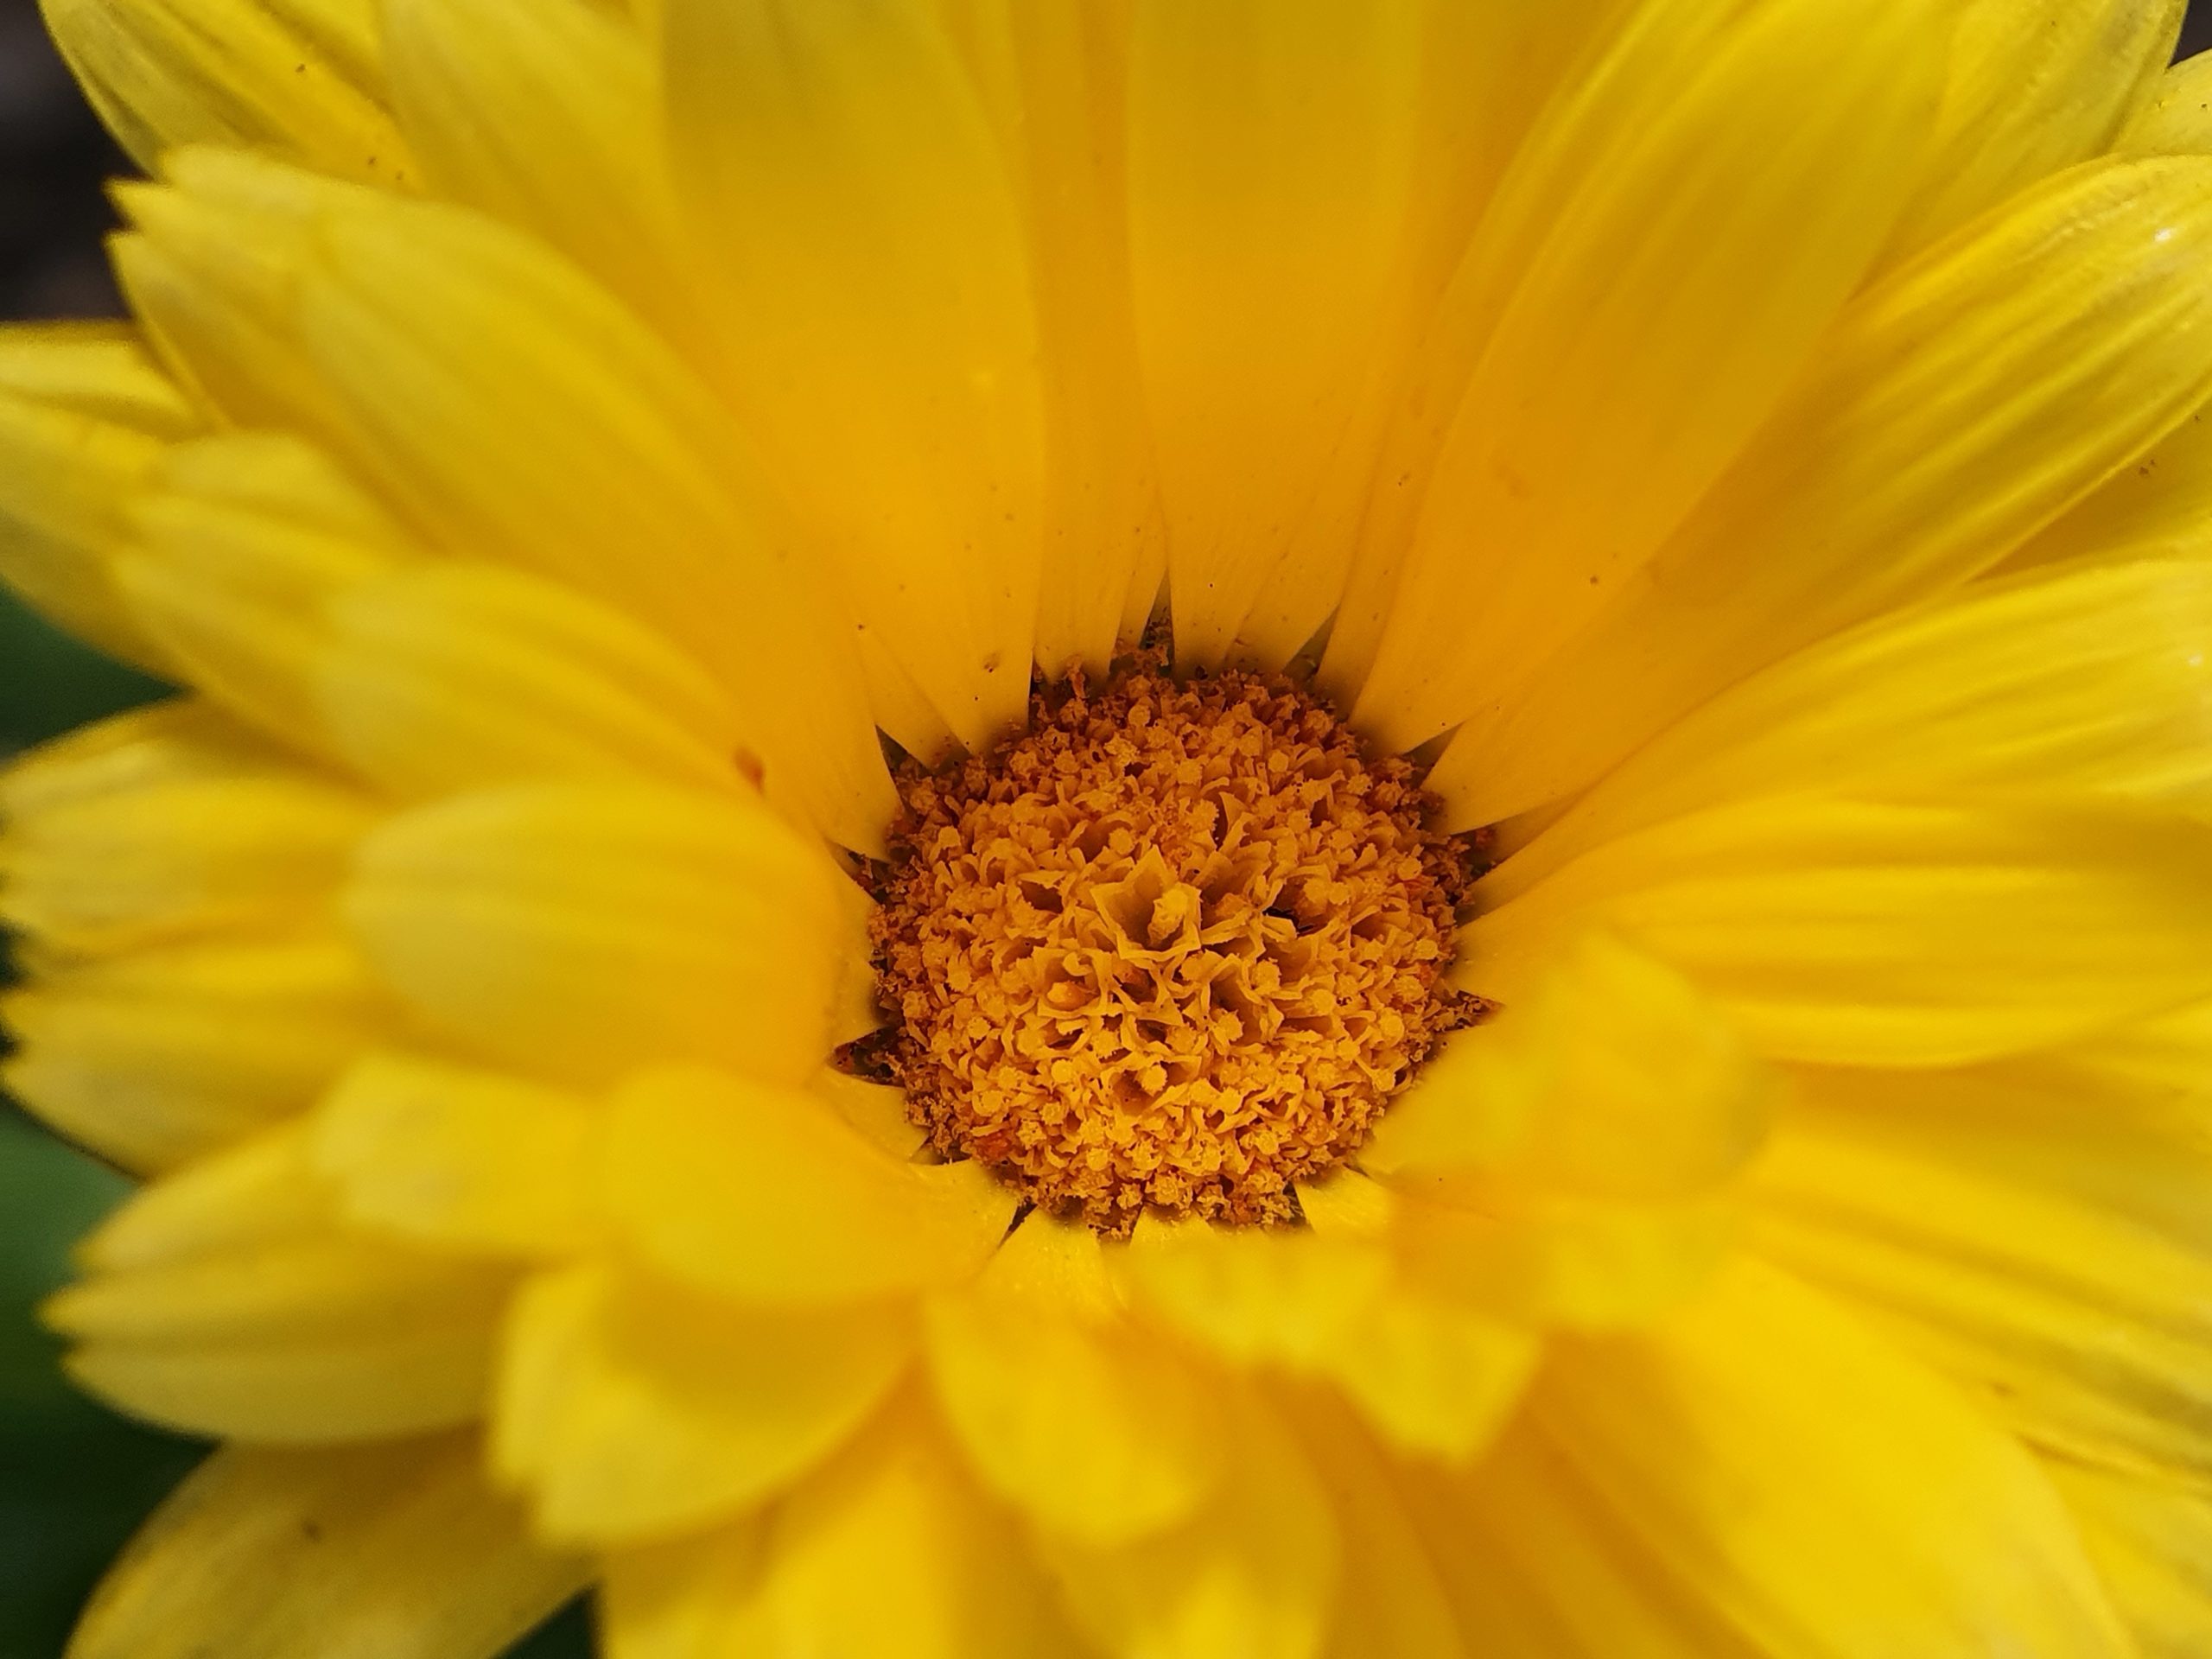 Sunflower macro view